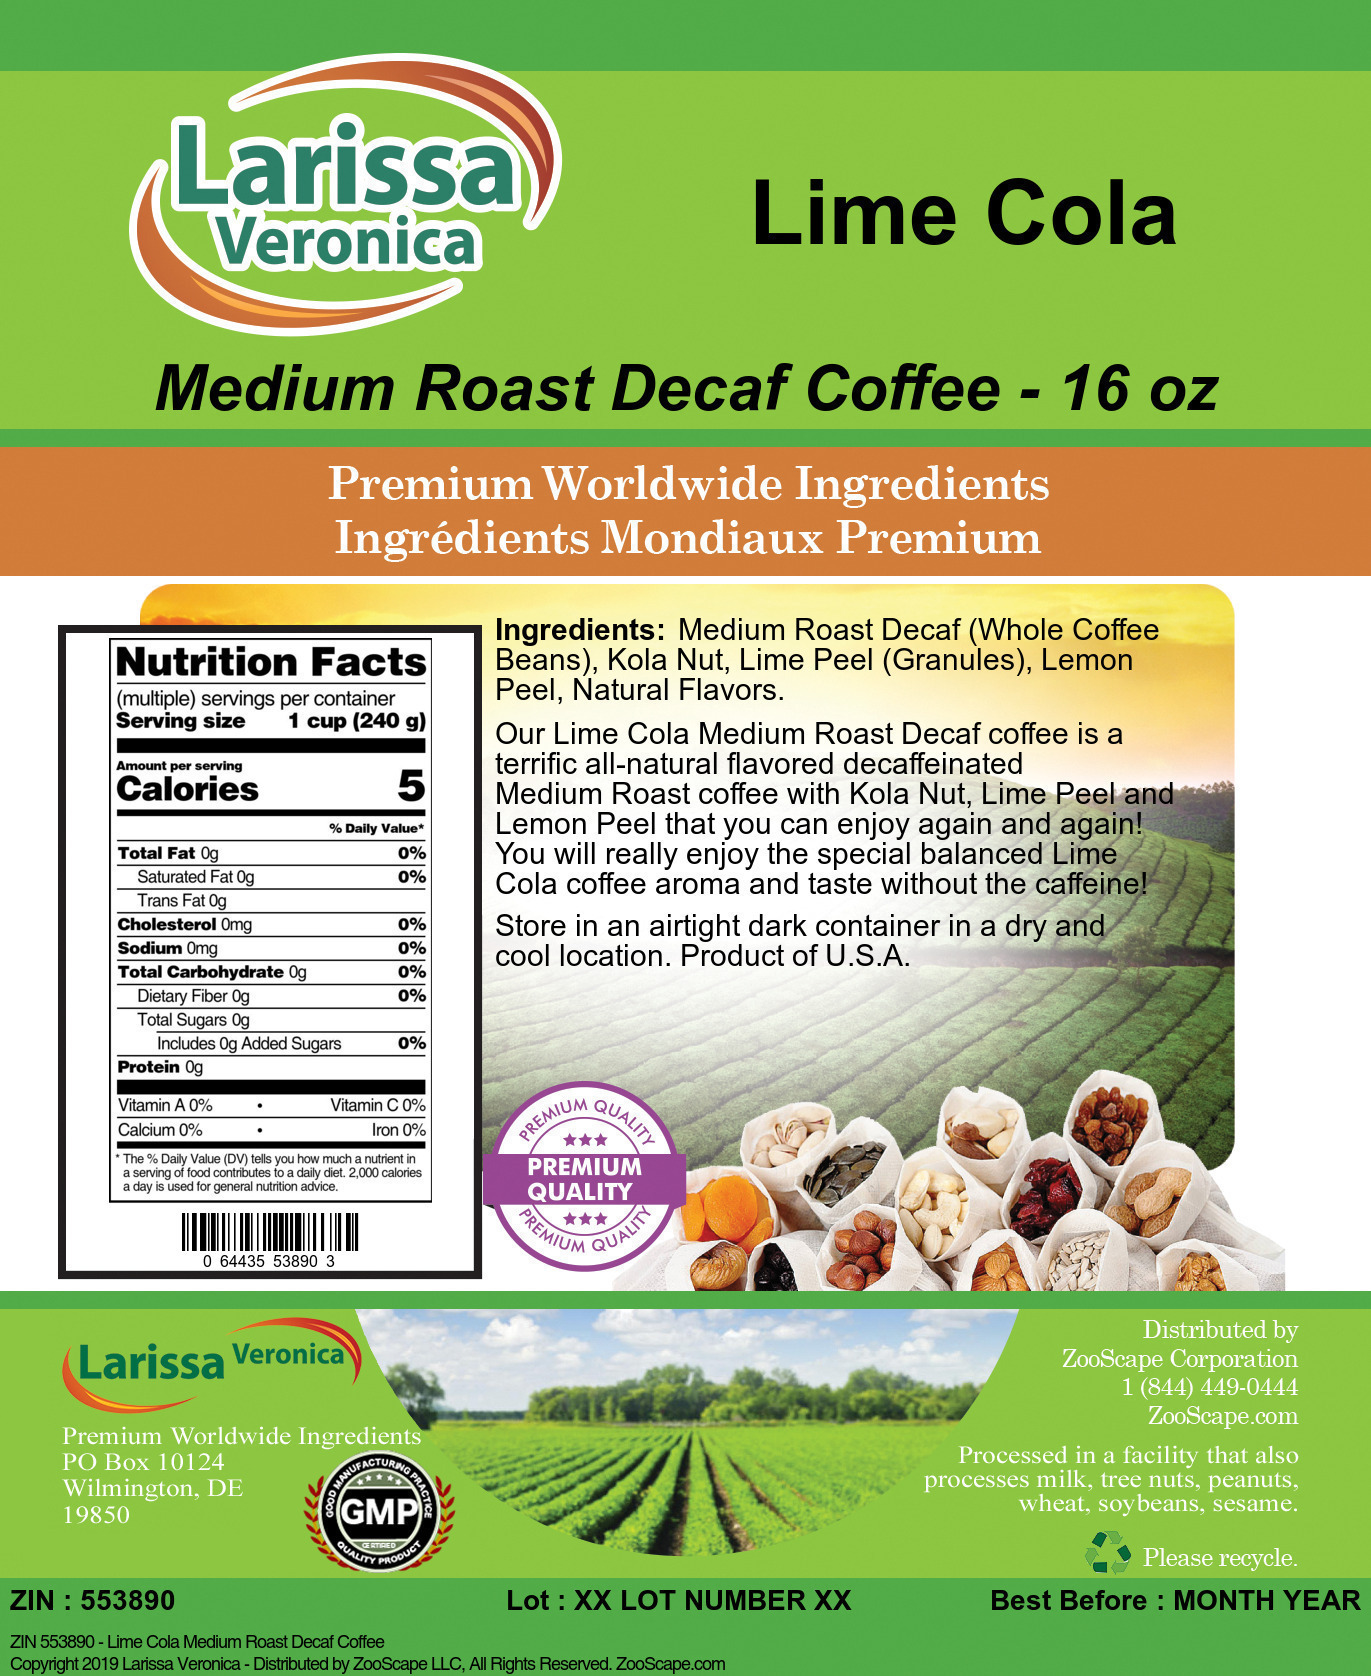 Lime Cola Medium Roast Decaf Coffee - Label